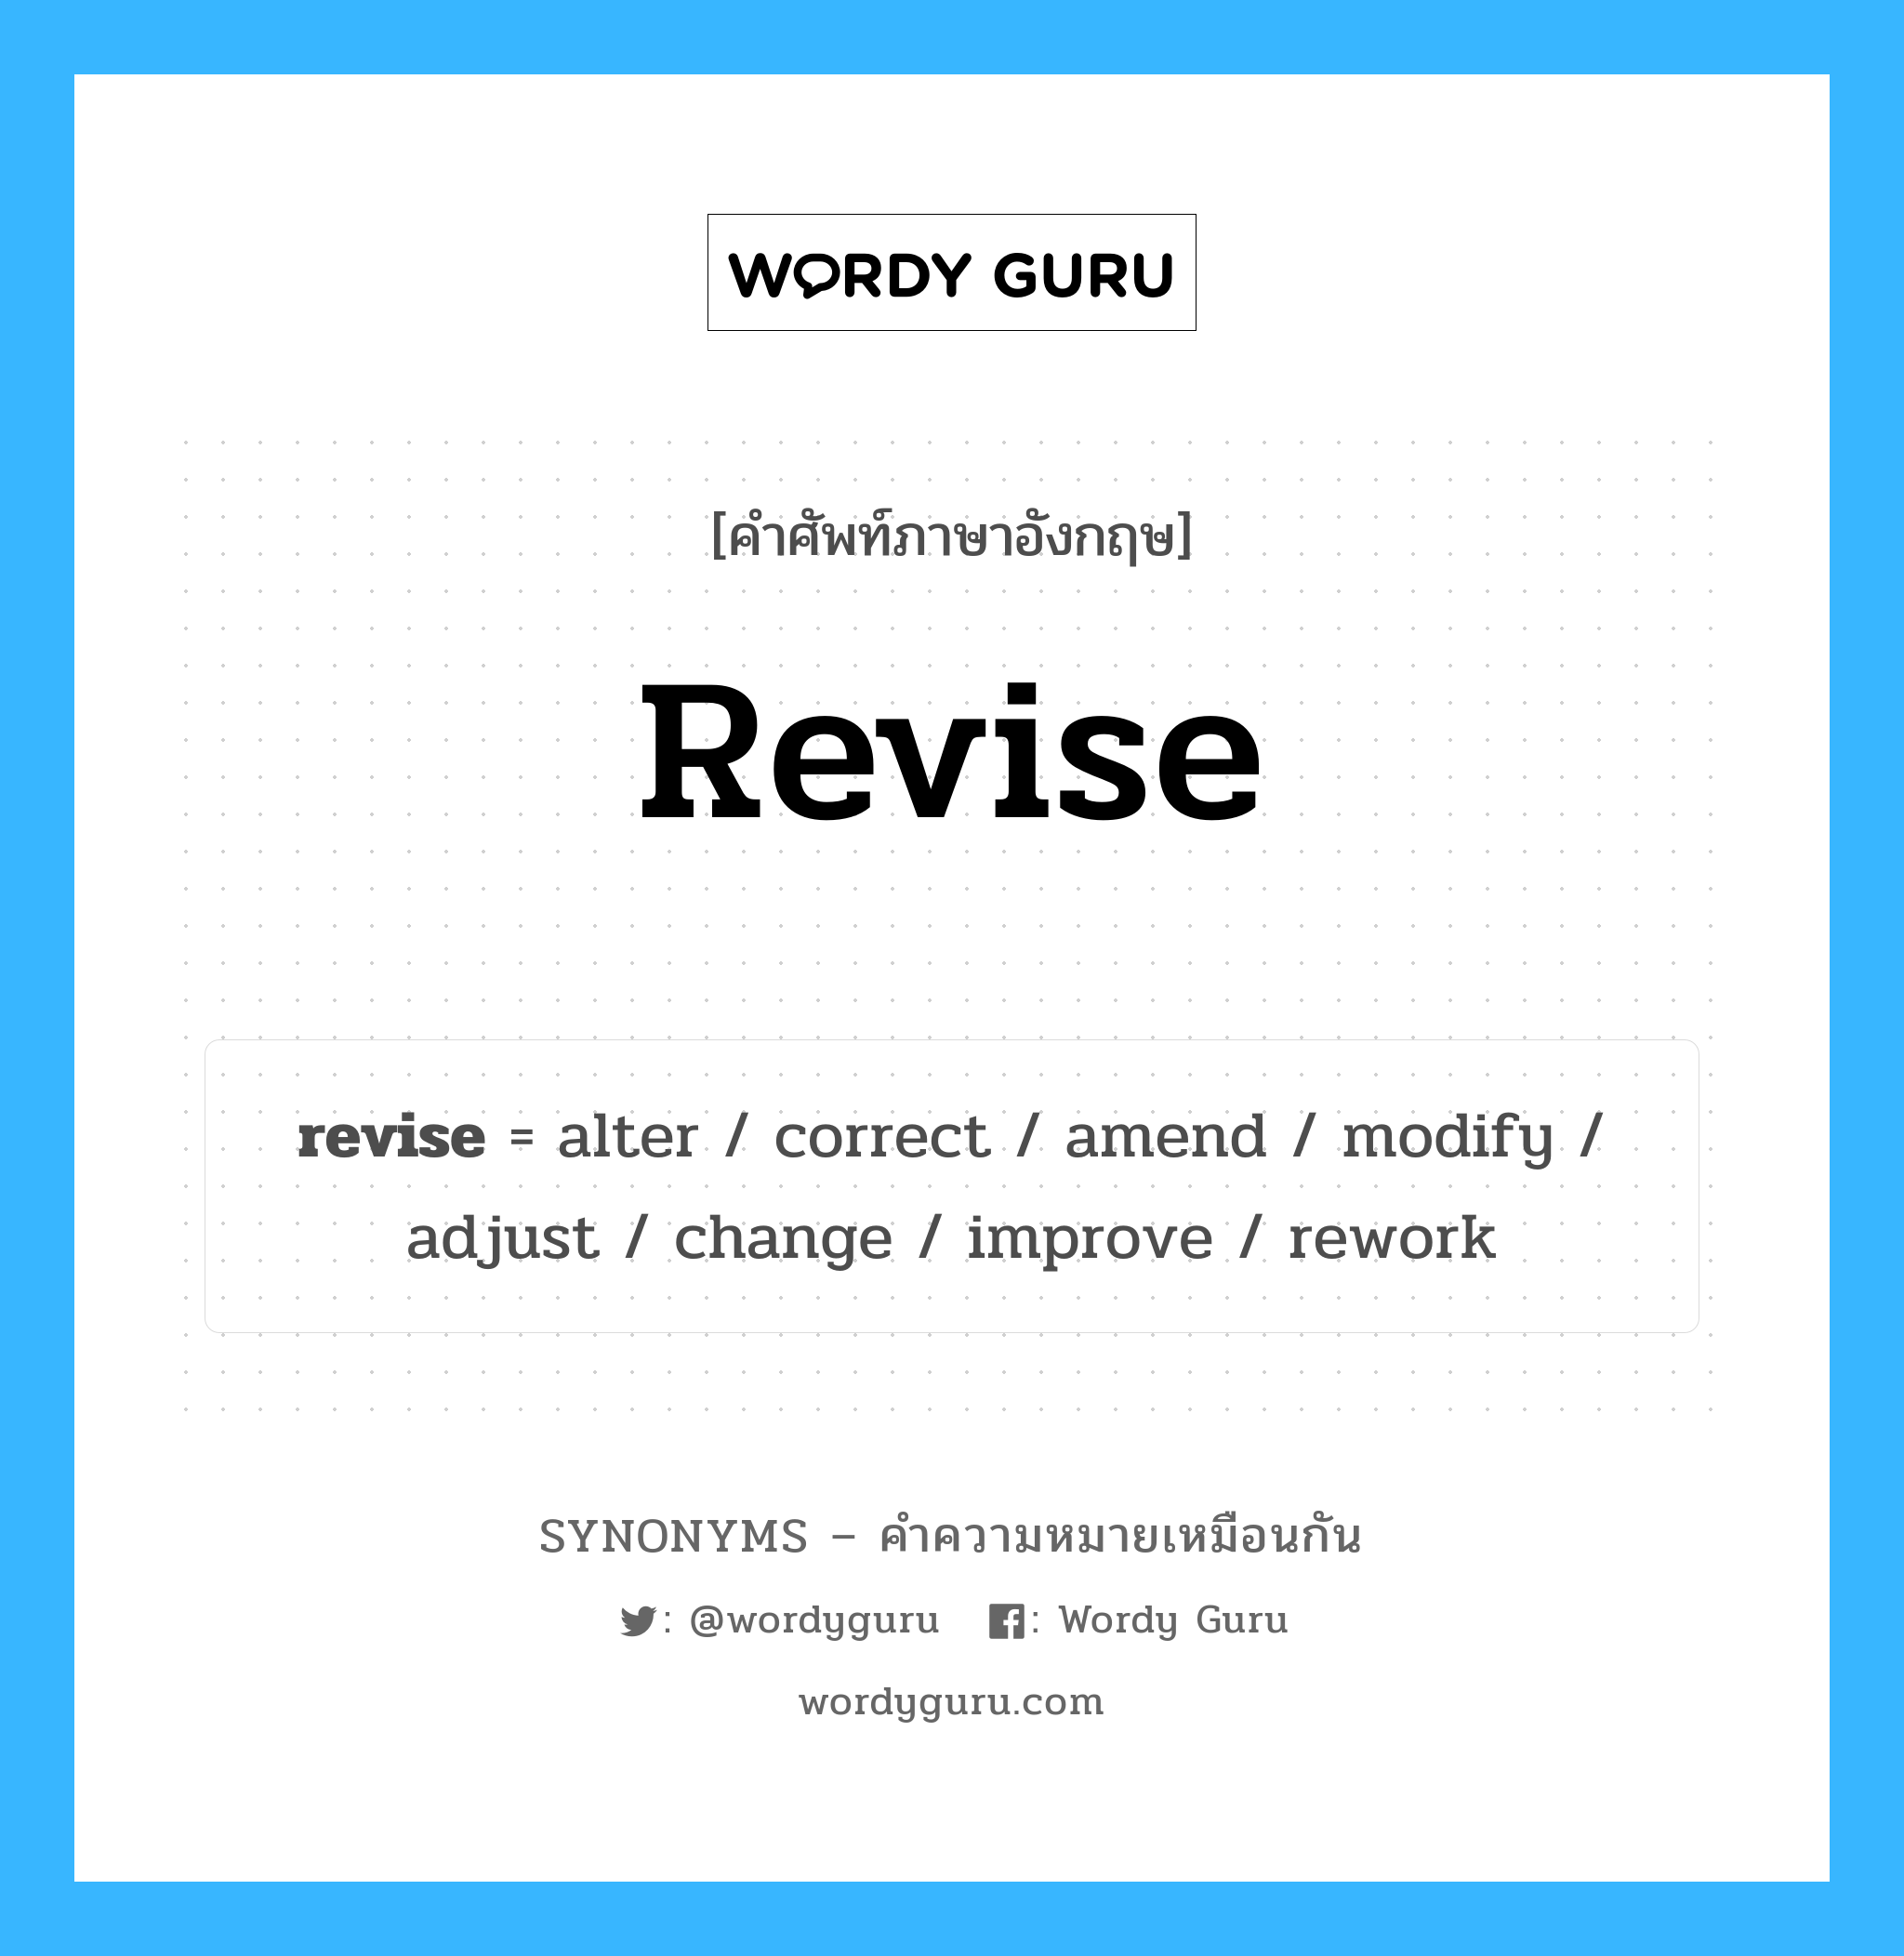 revise เป็นหนึ่งใน adjust และมีคำอื่น ๆ อีกดังนี้, คำศัพท์ภาษาอังกฤษ revise ความหมายคล้ายกันกับ adjust แปลว่า ปรับ หมวด adjust